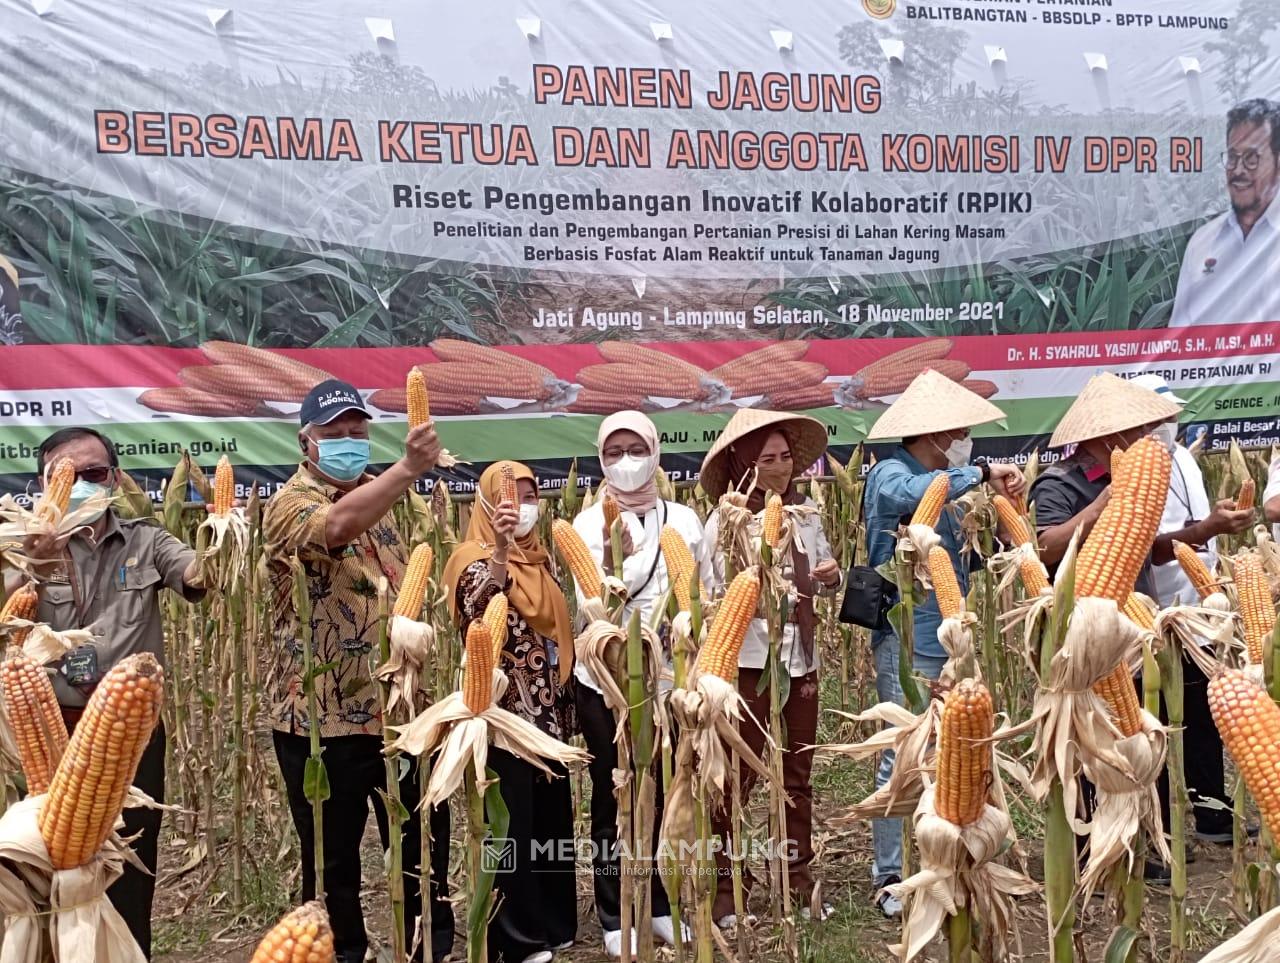 Bulog Siap Serap Hasil Panen Jagung Petani di Lampung